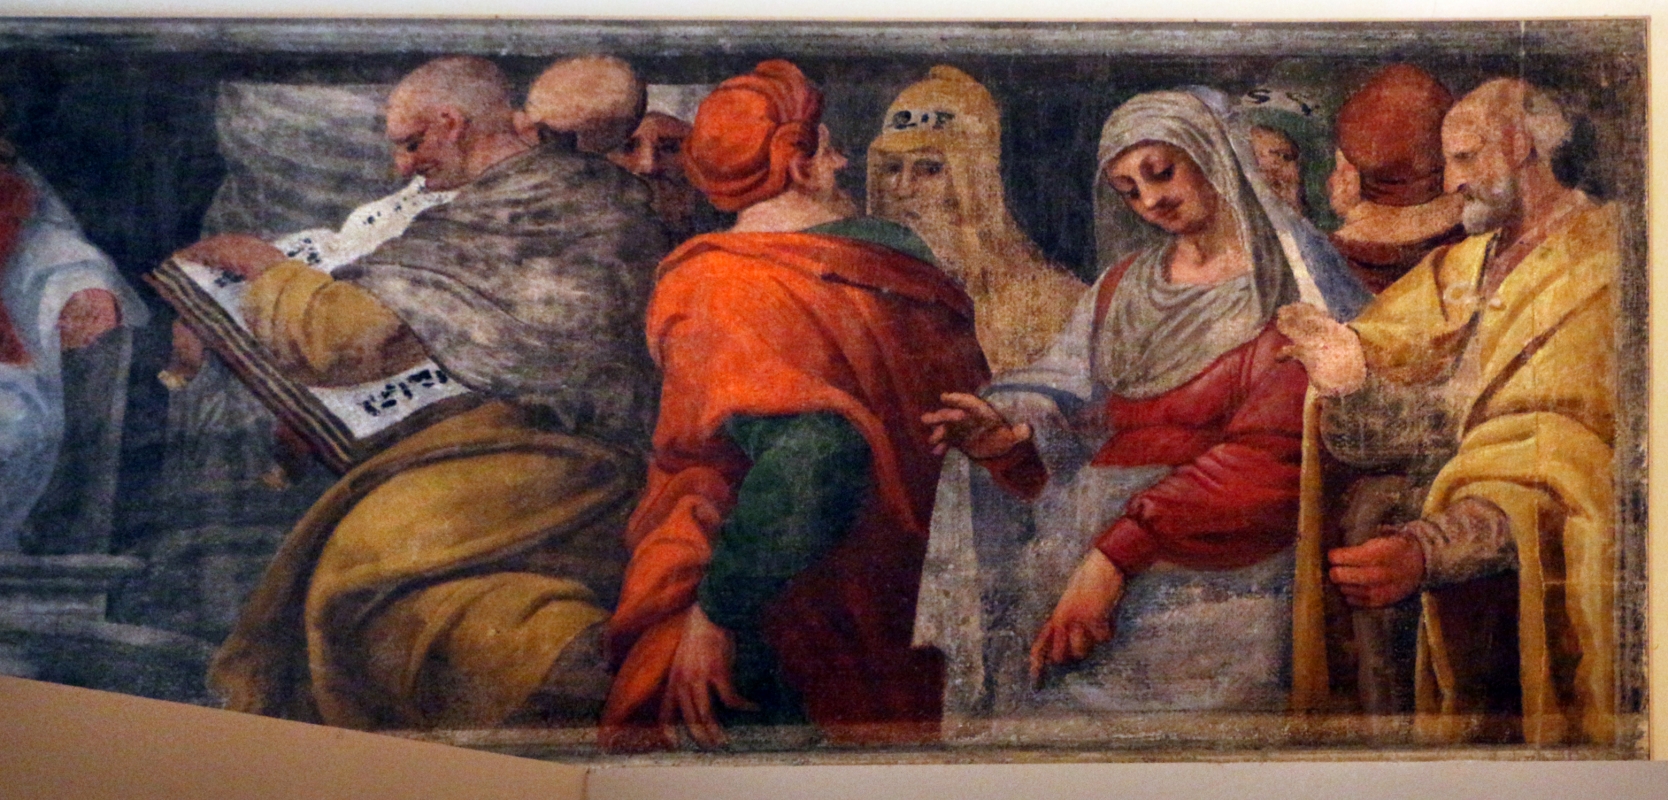 Giuseppe mazzuoli detto il bastardo, disputa coi dottori, 1579-80, dalla chiesa del gesù a ferrara 03 - Sailko